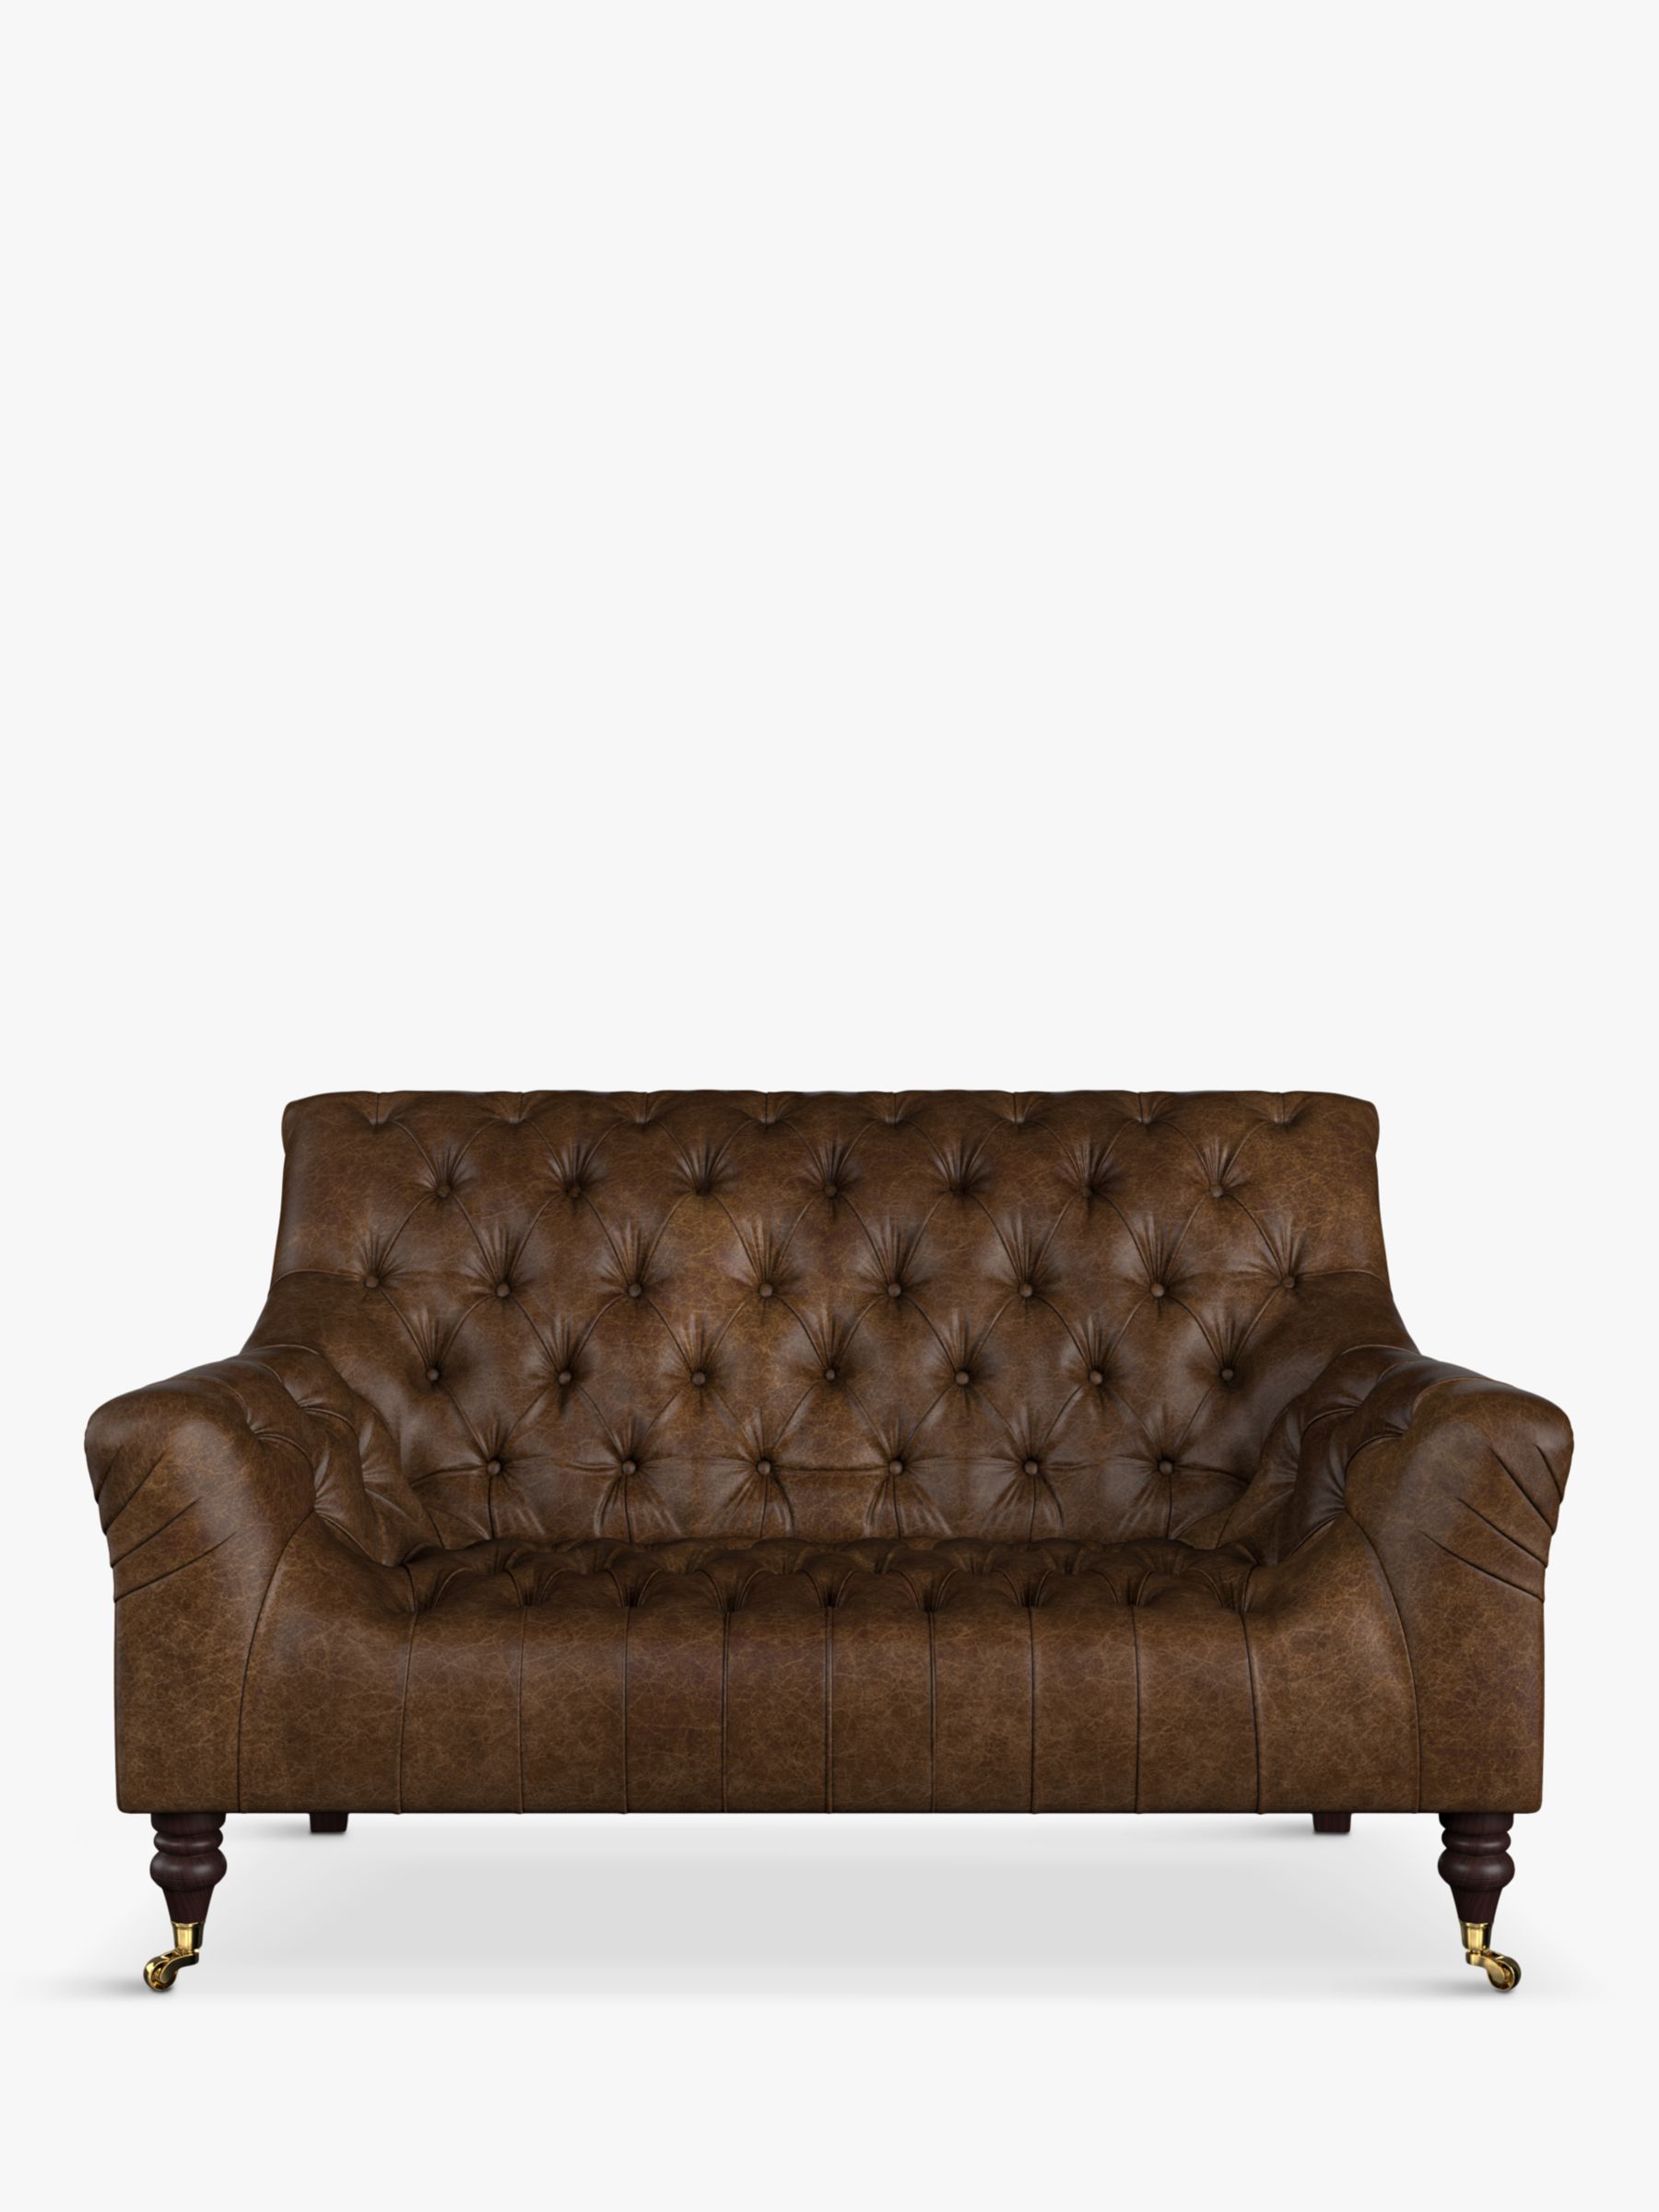 Skittle Range, Tetrad Skittle Petite 2 Seater Leather Sofa, Galveston Bark